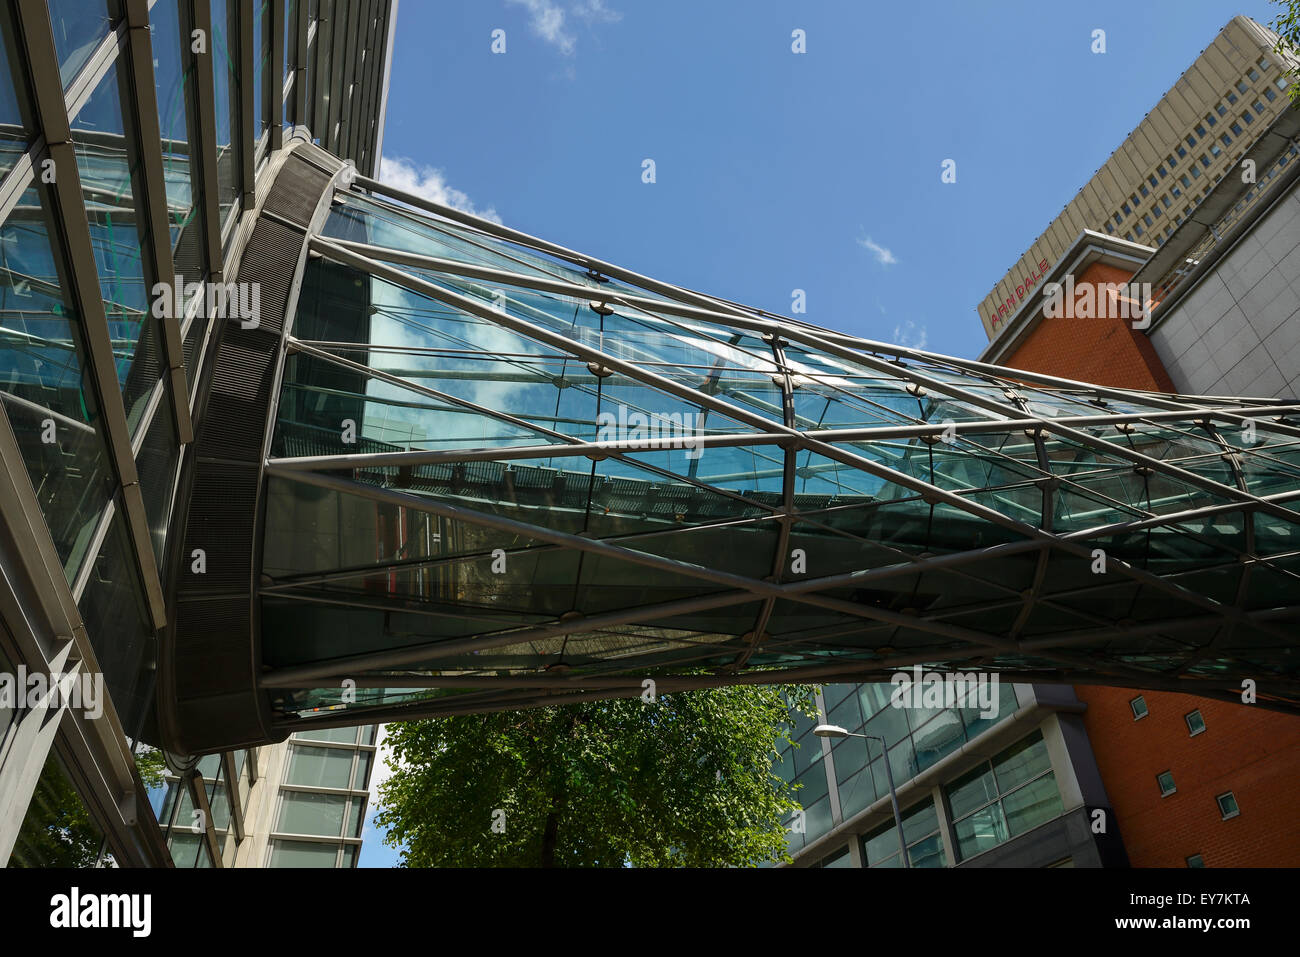 La pasarela de vidrio en Corporation Street en Manchester que conecta el recinto comercial Arndale a Marks & Spencer Foto de stock